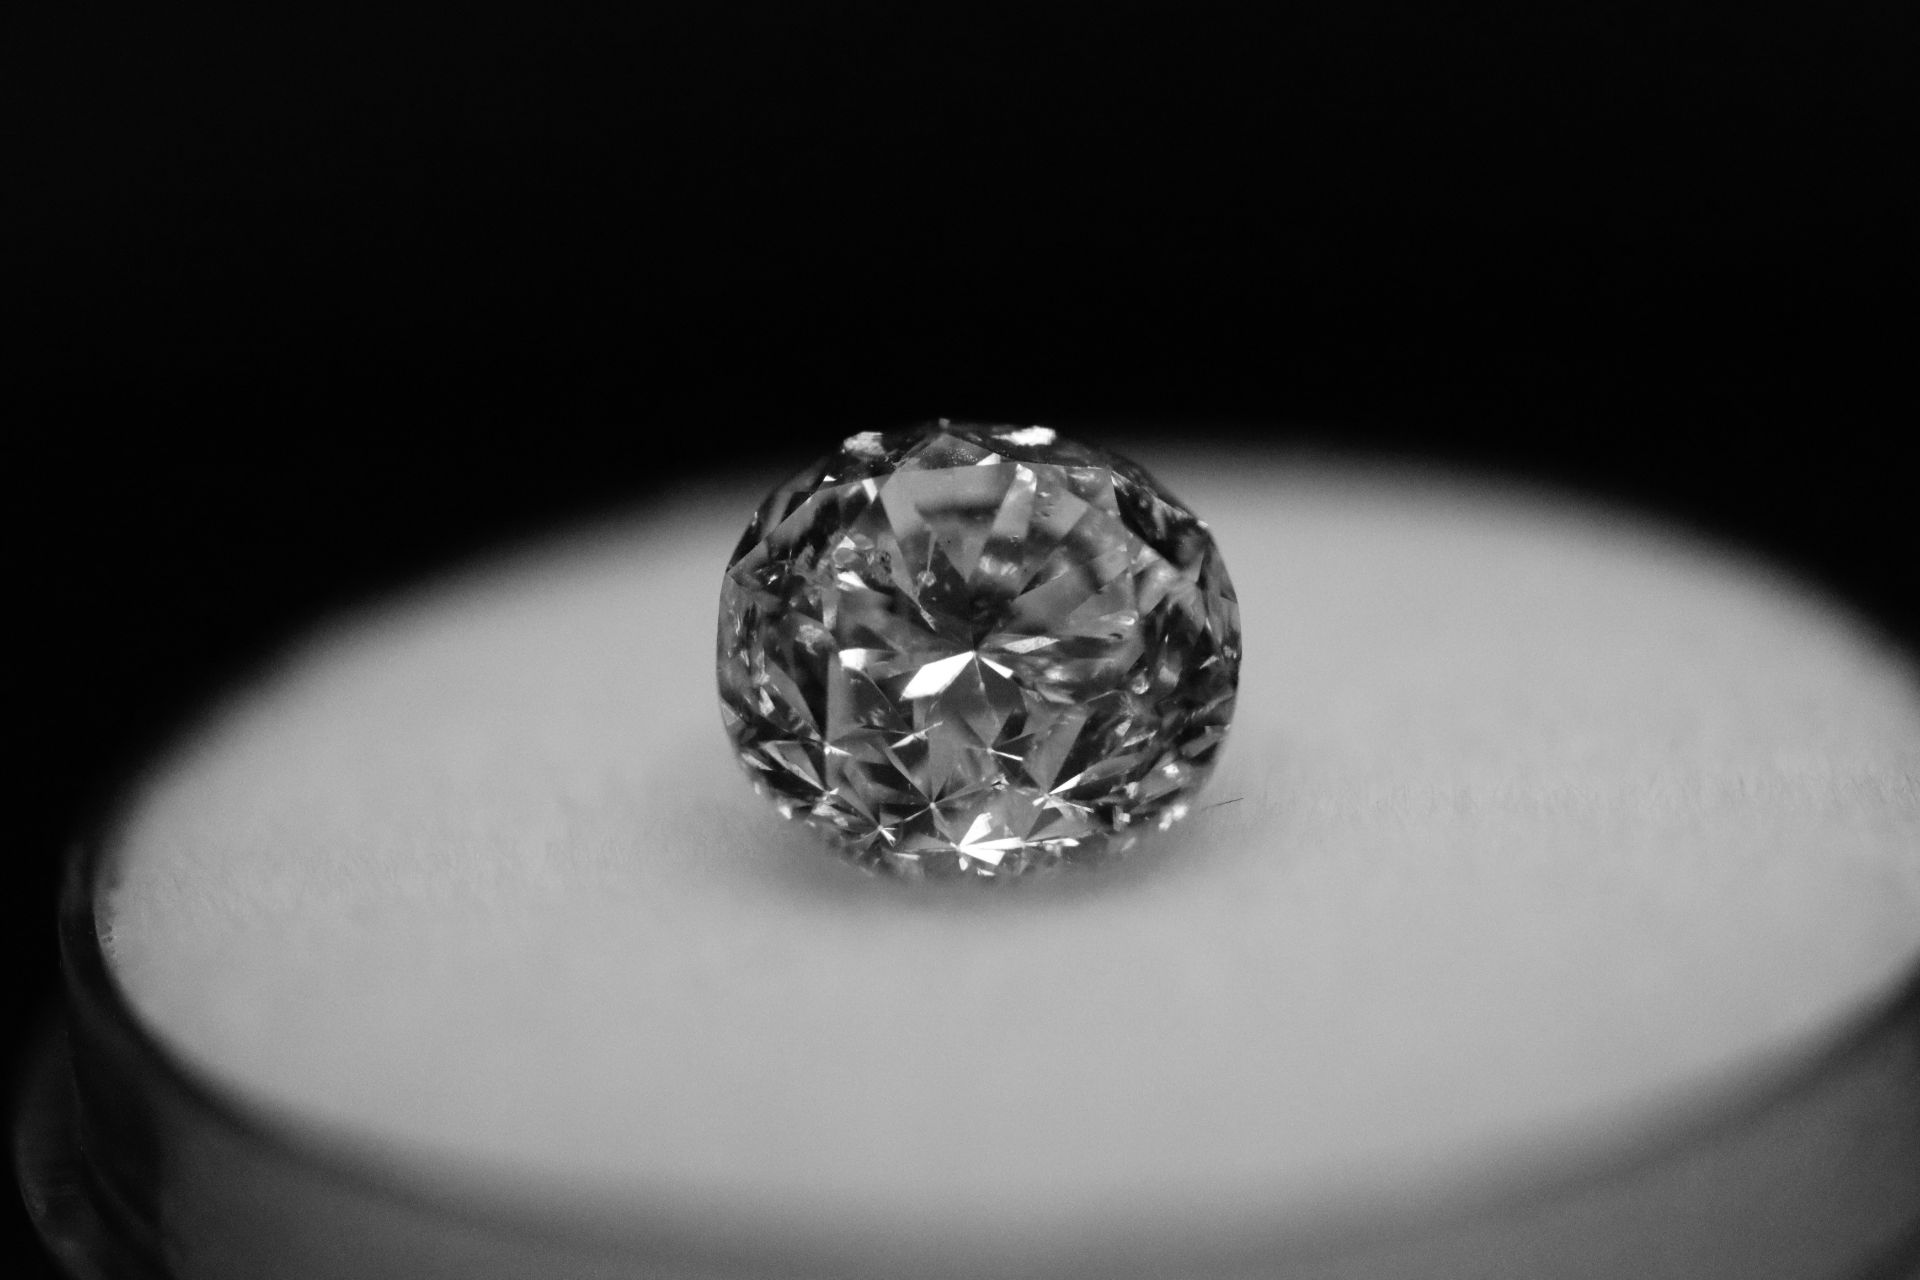 Single - Round Brilliant Cut Natural Diamond 2.00 Carat E Colour Clarity VS2 - DGI 142590148